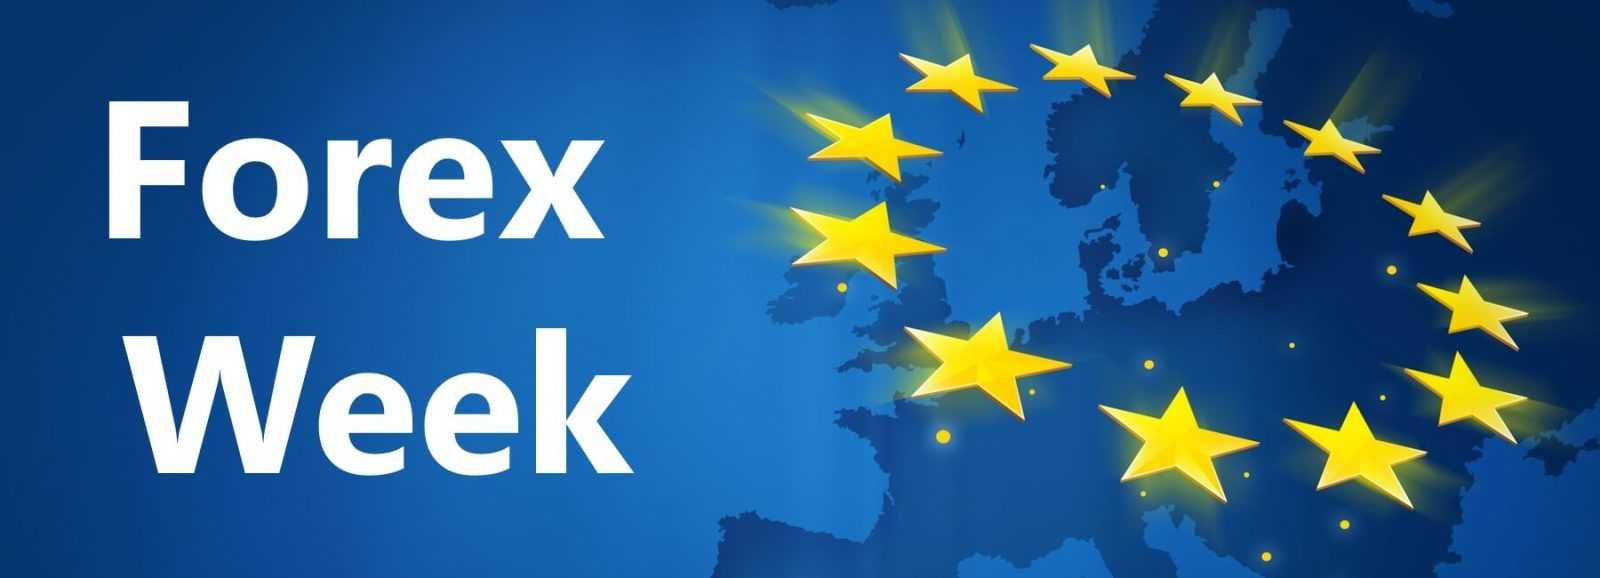 Forex Weekly Report: Giao dịch thương mại EU-Nhật Bản